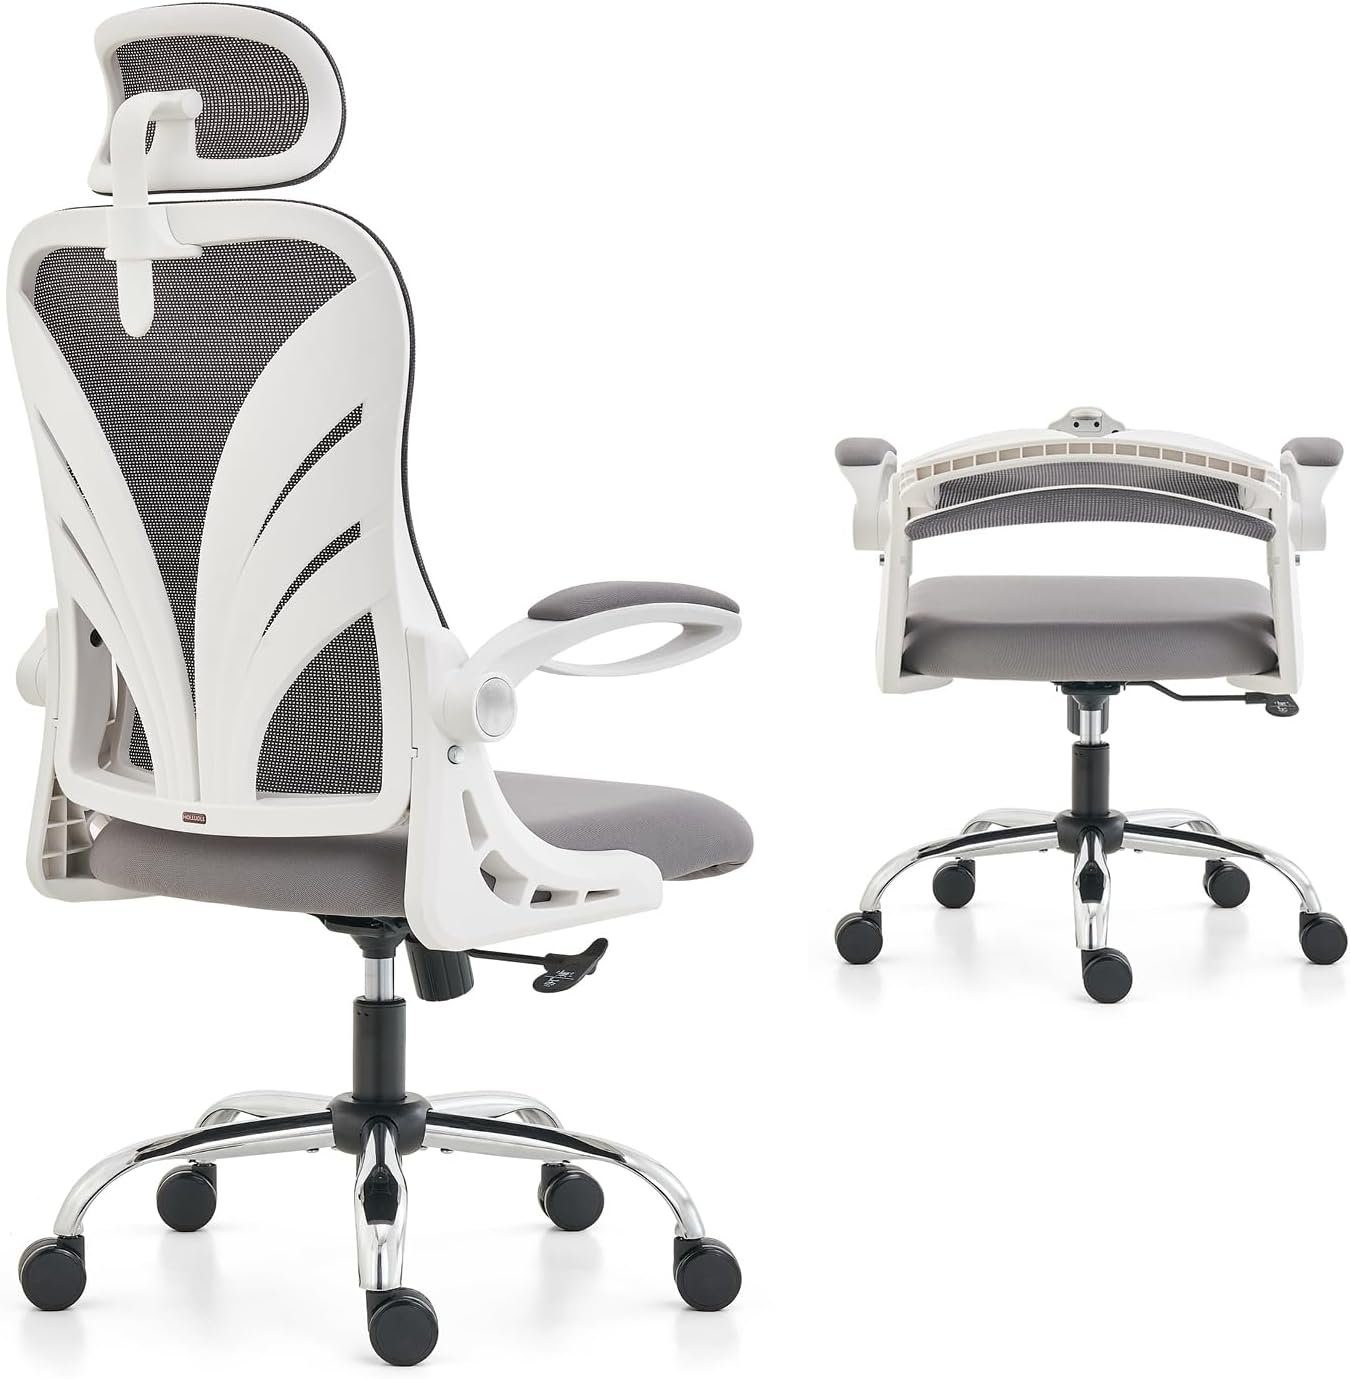 HOLLUDLE Bürostuhl (Ergonomischer Burostuhl,Schreibtischstuhl mit Verstellbarer Sitz), Ergonomischer Bürostuhl Mit Klappbarer Rückenlehne Schreibtischstuhl